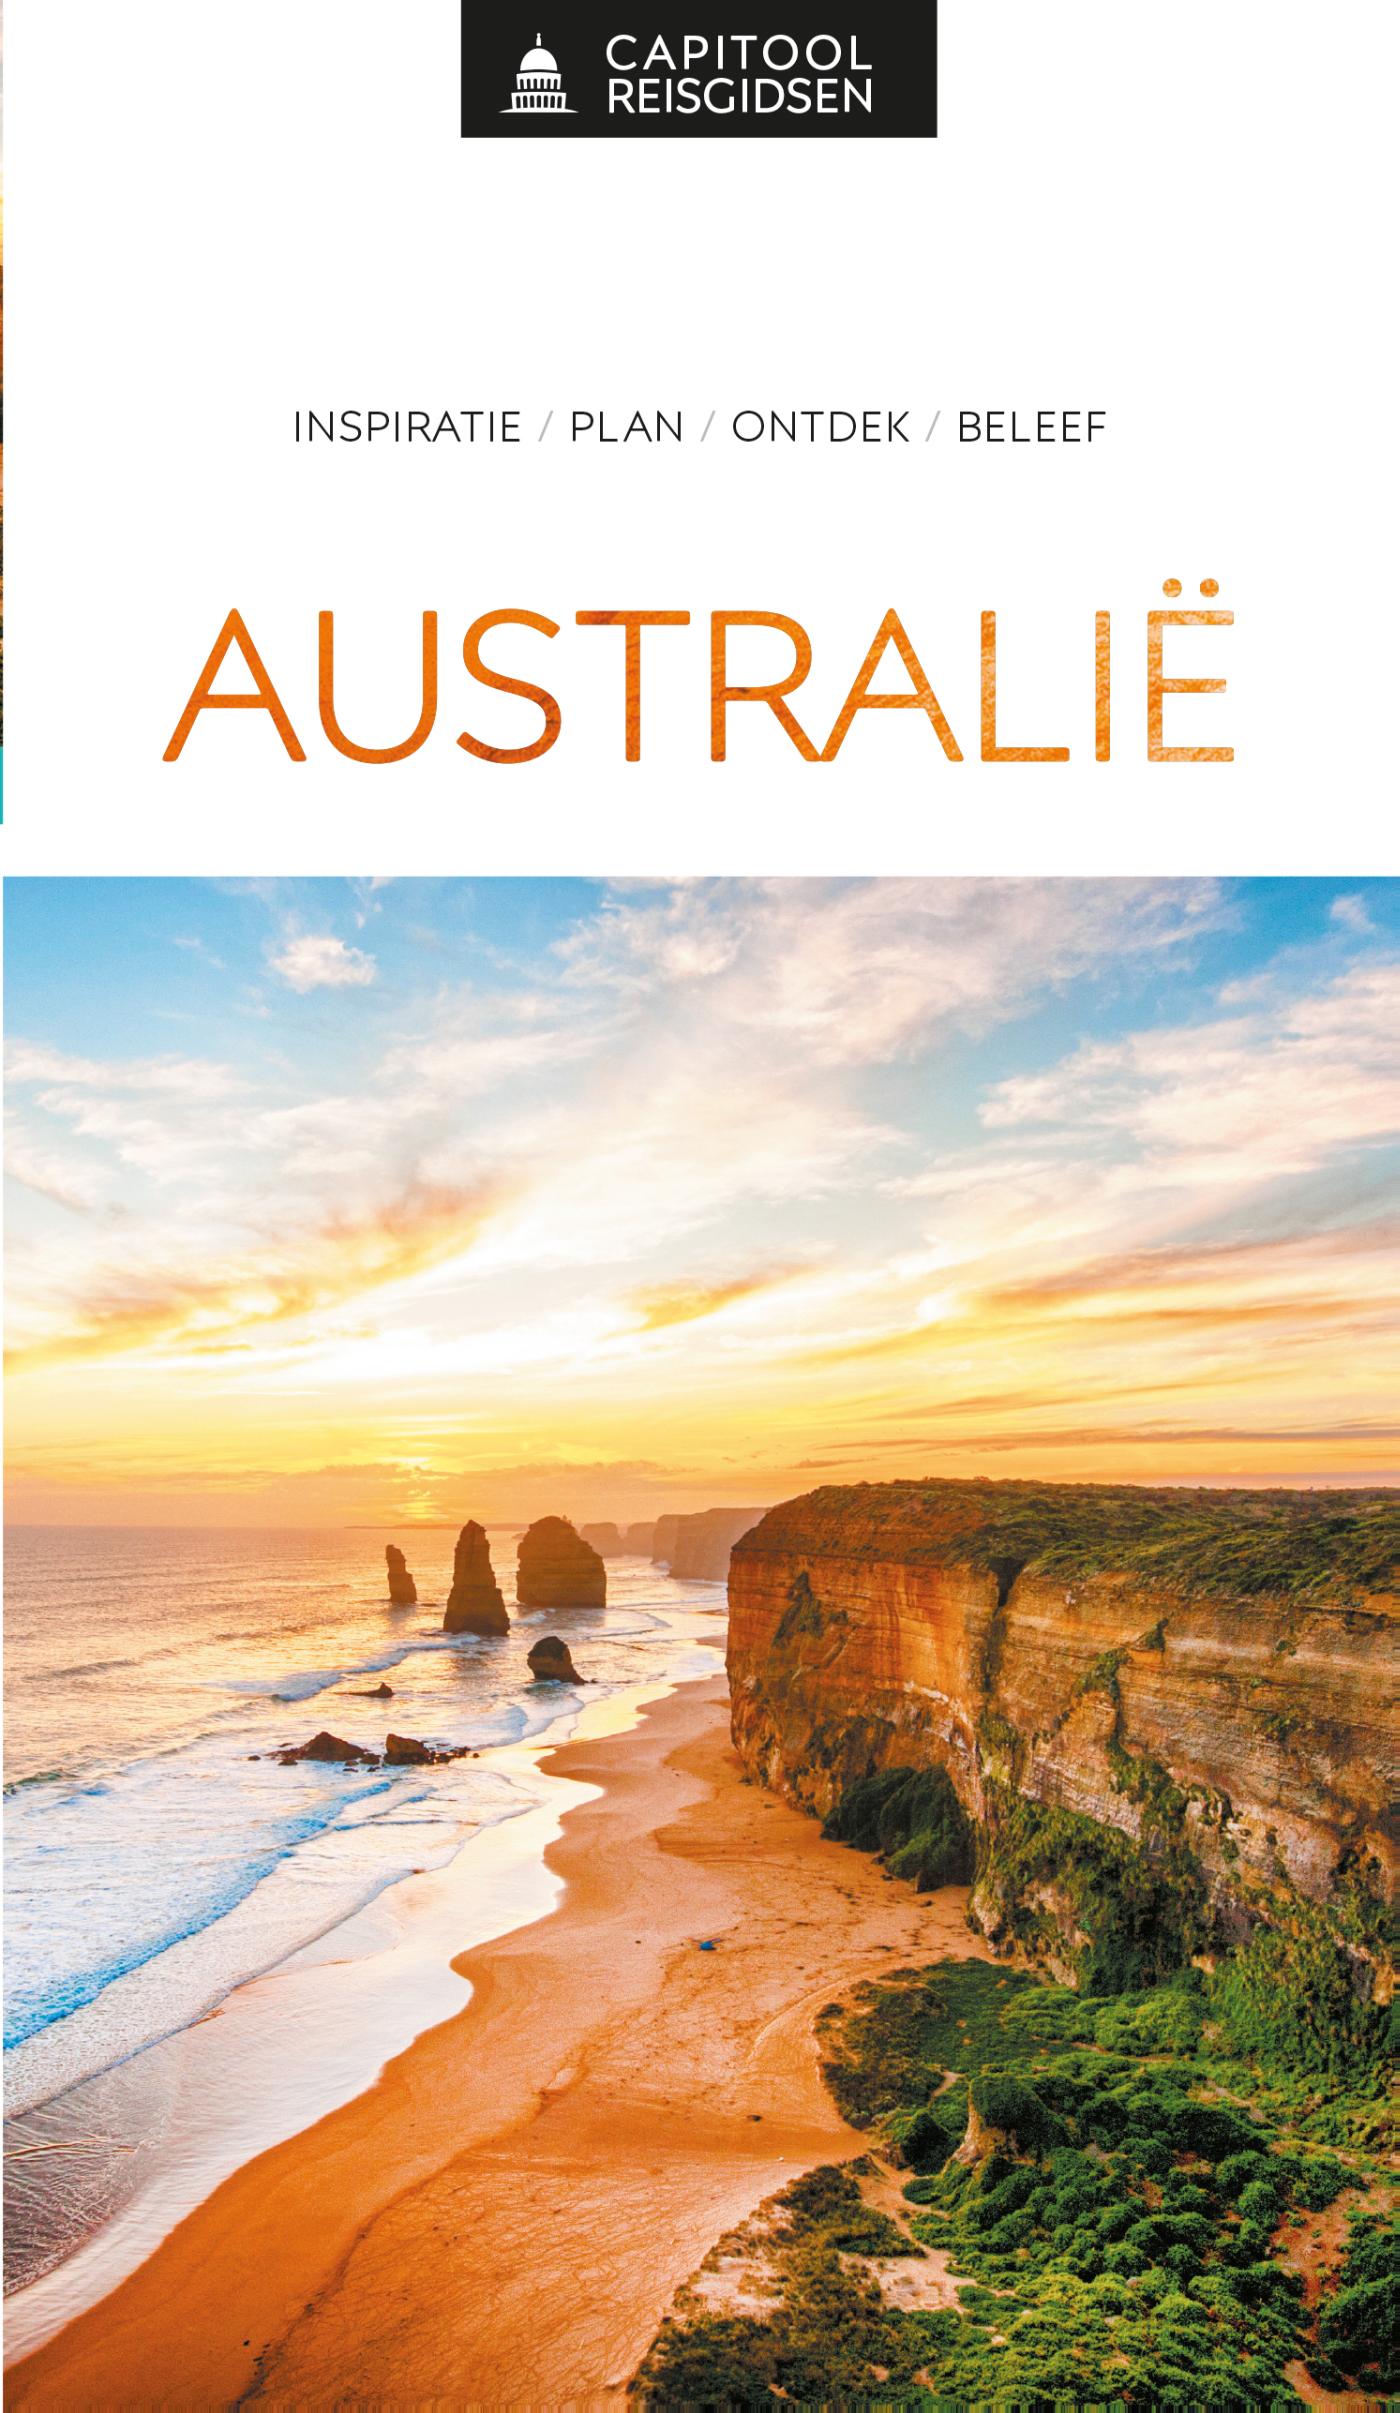 Online bestellen: Reisgids Capitool Reisgidsen Australië | Unieboek